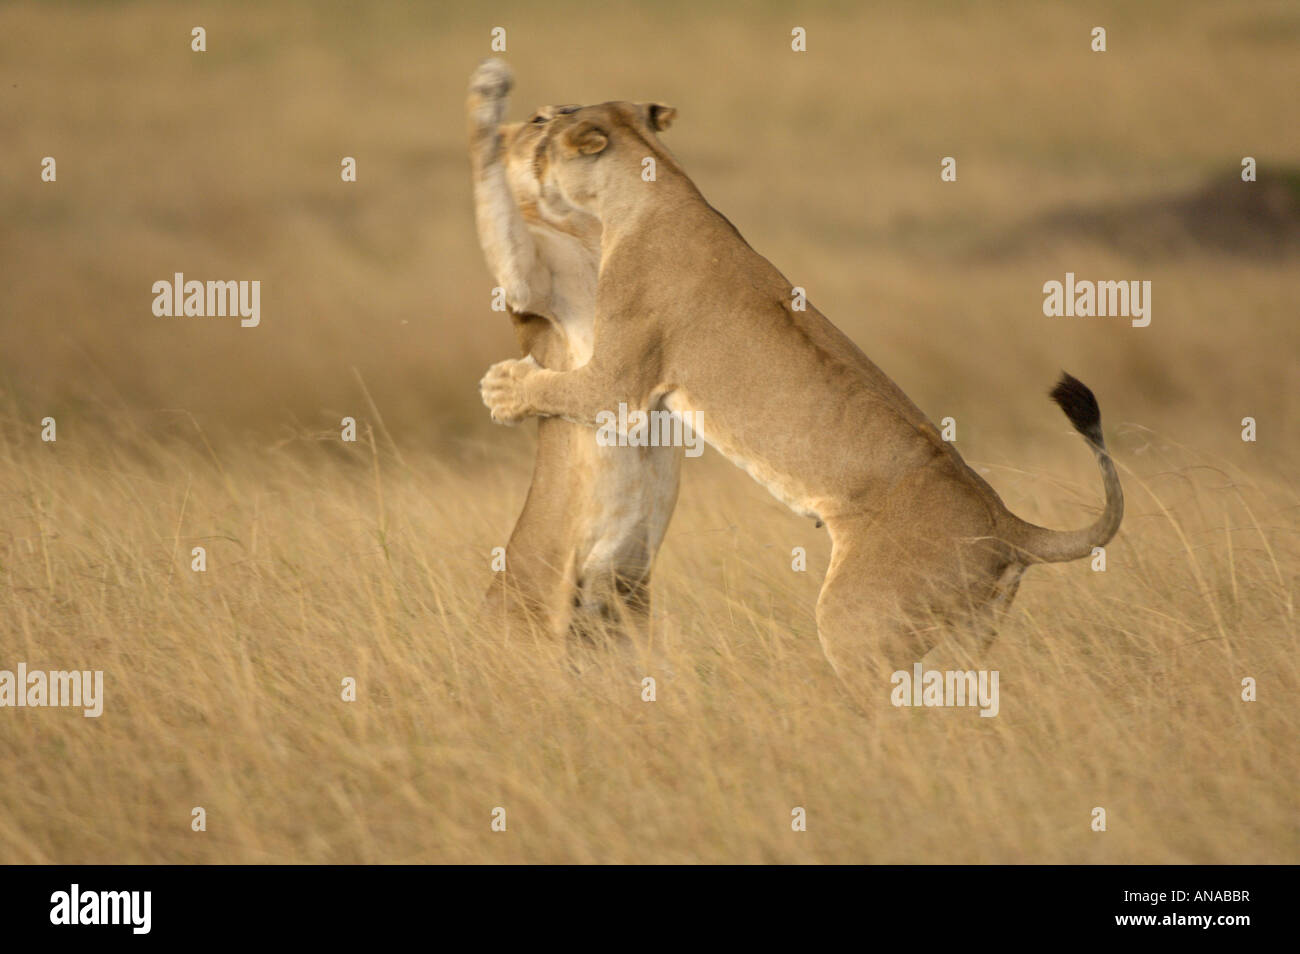 Des lionceaux à jouer (Panthera leo) Banque D'Images